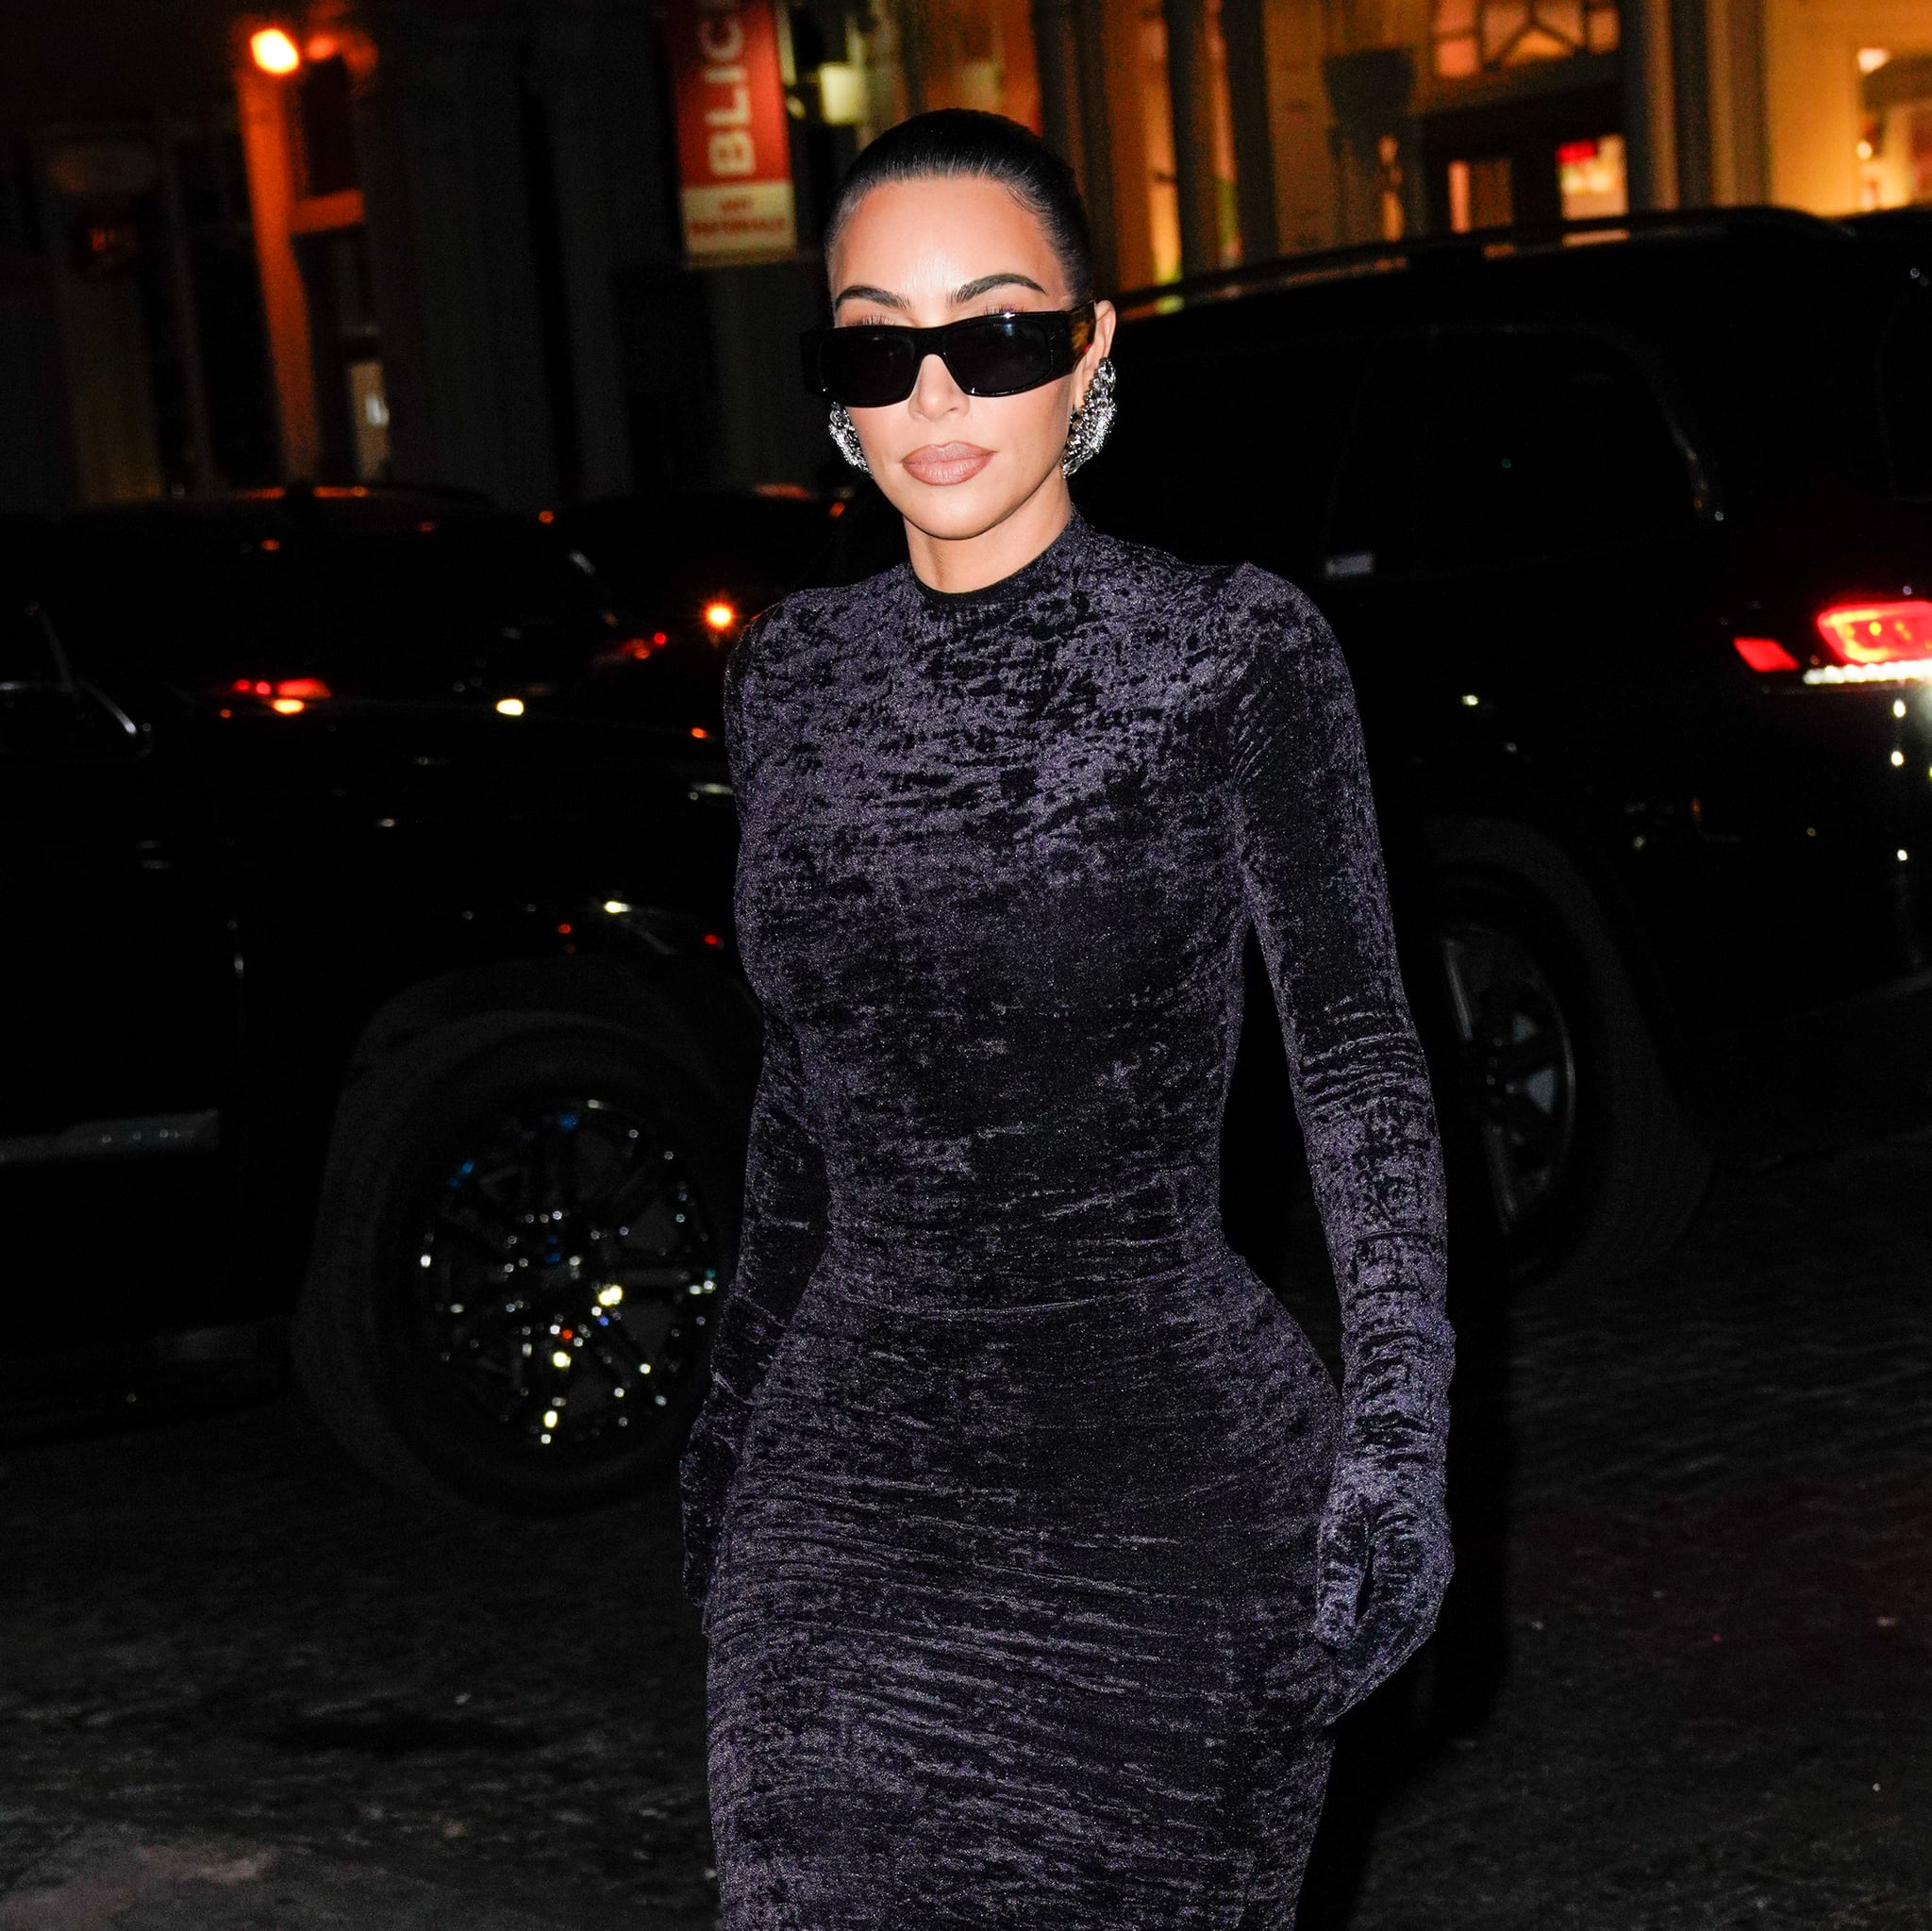 NEW YORK, NEW YORK - NOVEMBER 03: Kim Kardashian returns to her hotel on November 03, 2021 in New York City. (Photo by Gotham/GC Images)